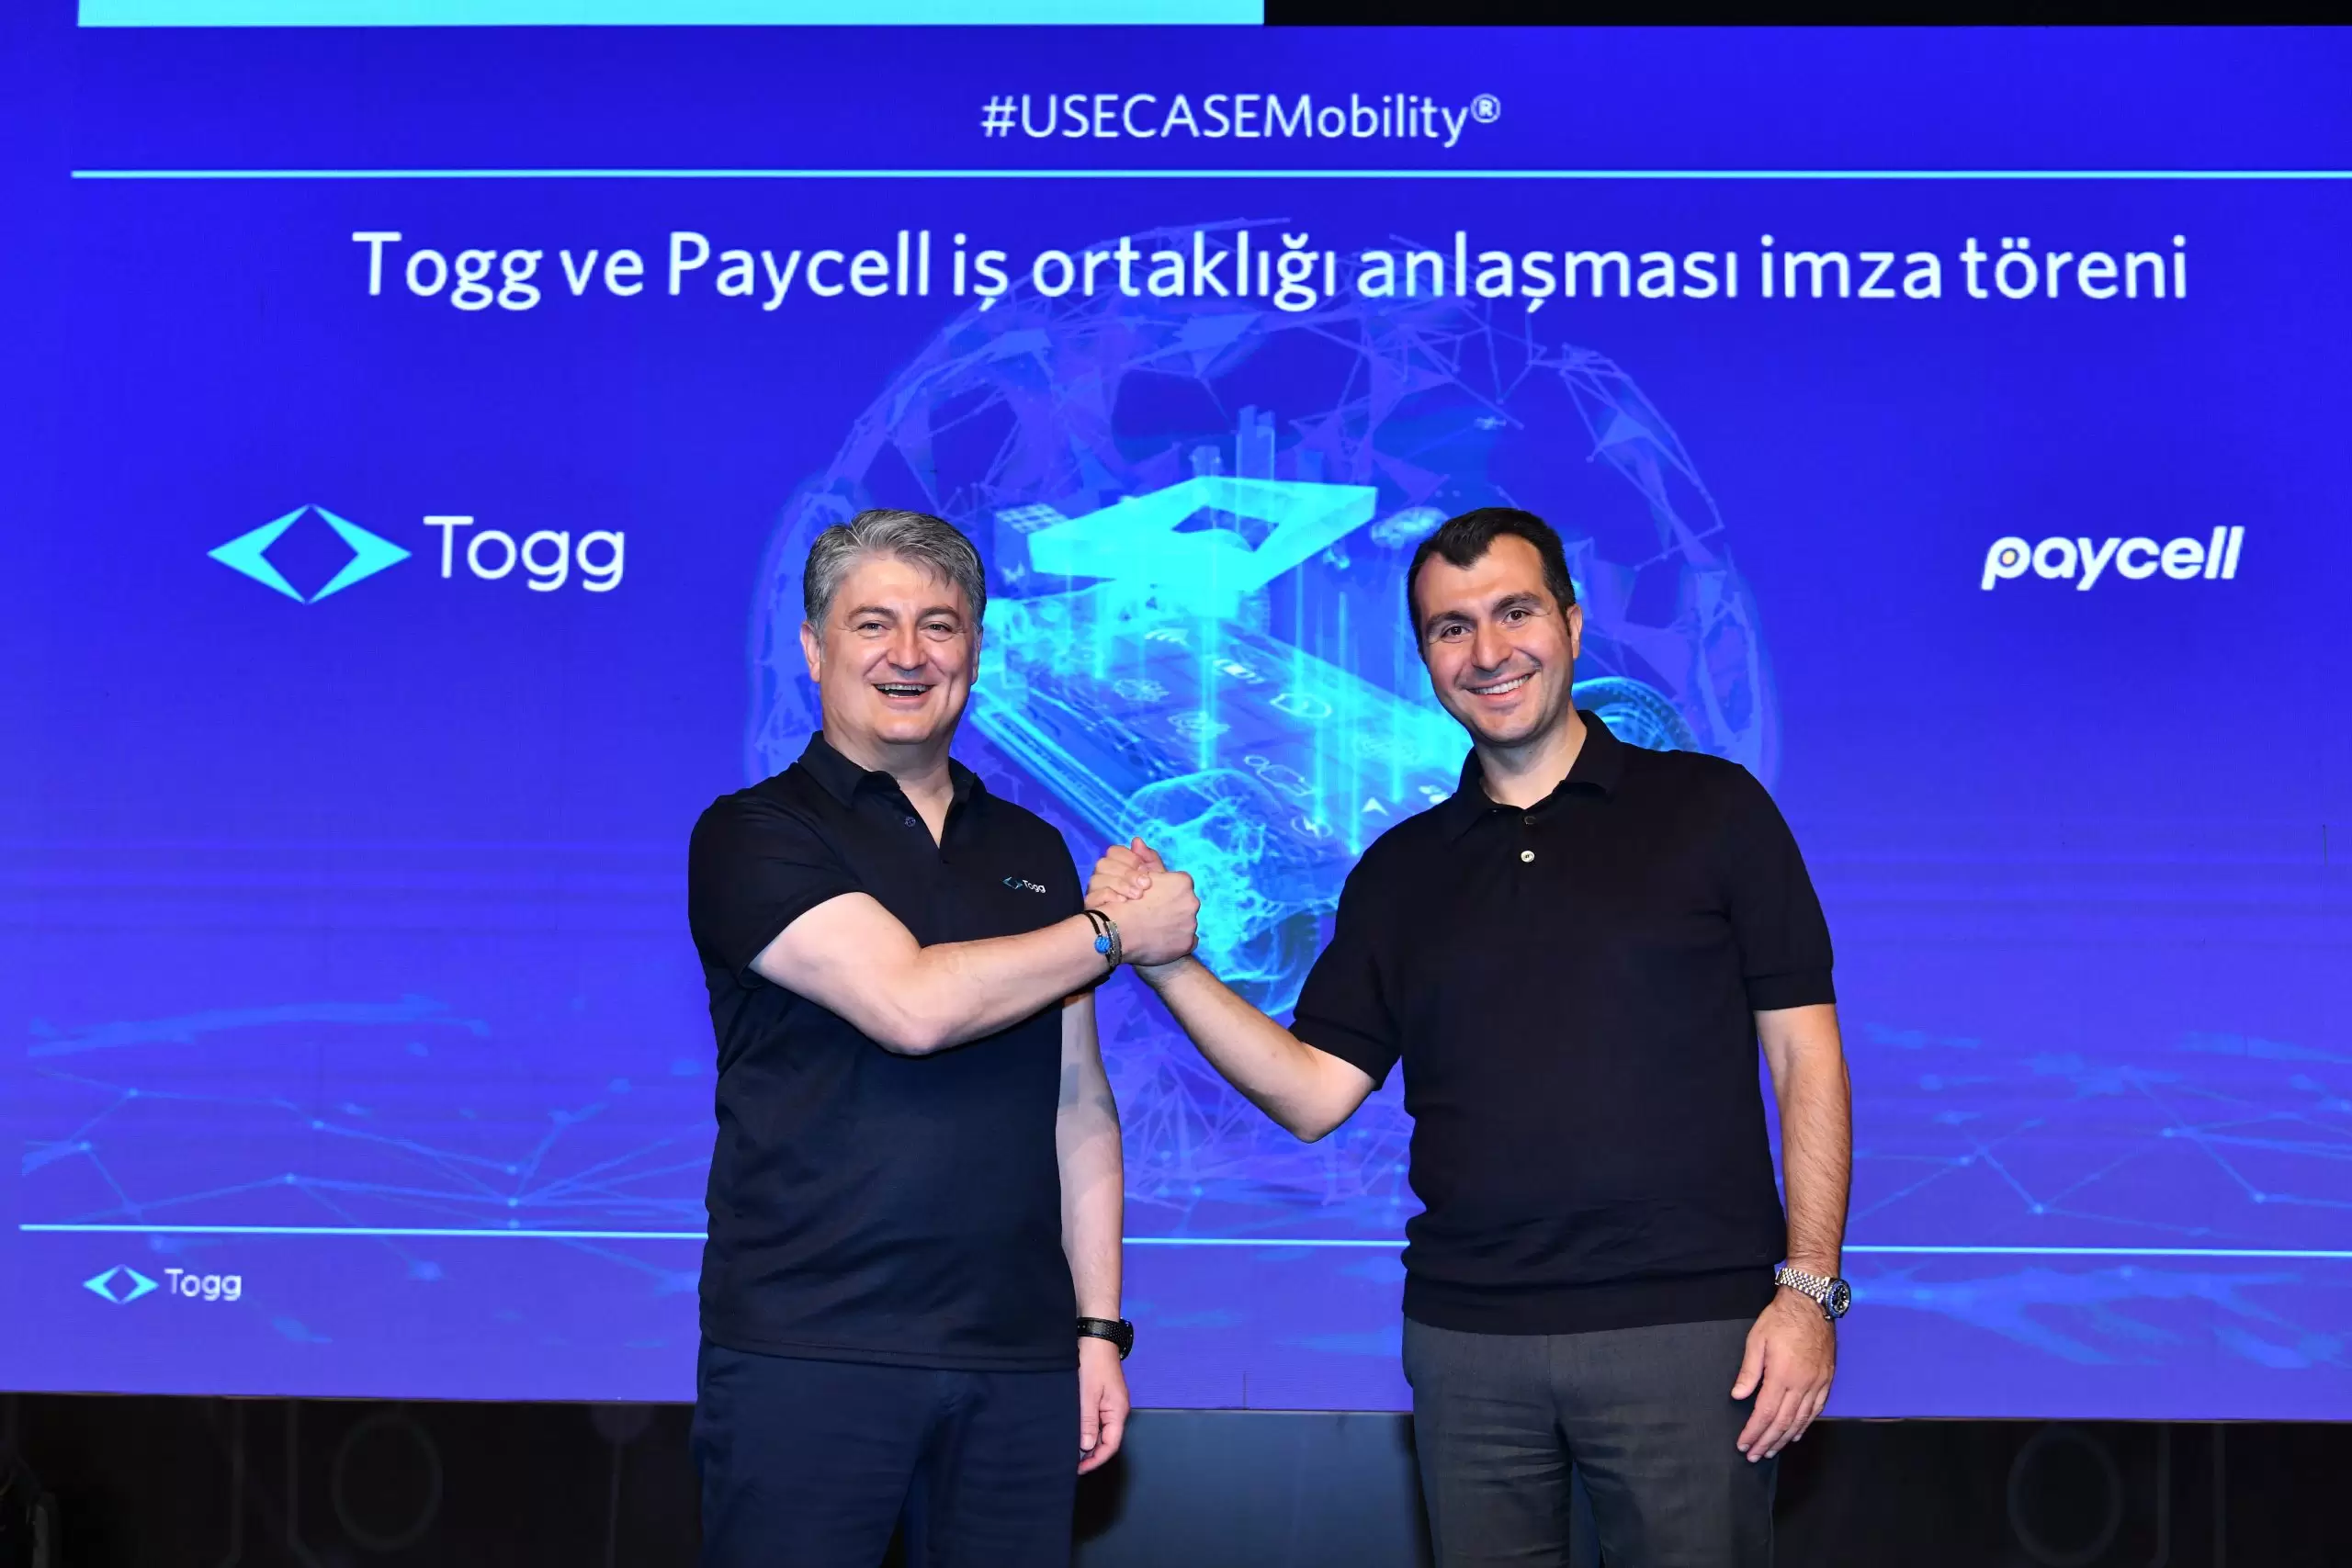 Togg, yenilikçi finansal hizmetlerini Paycell altyapısıyla sunacak